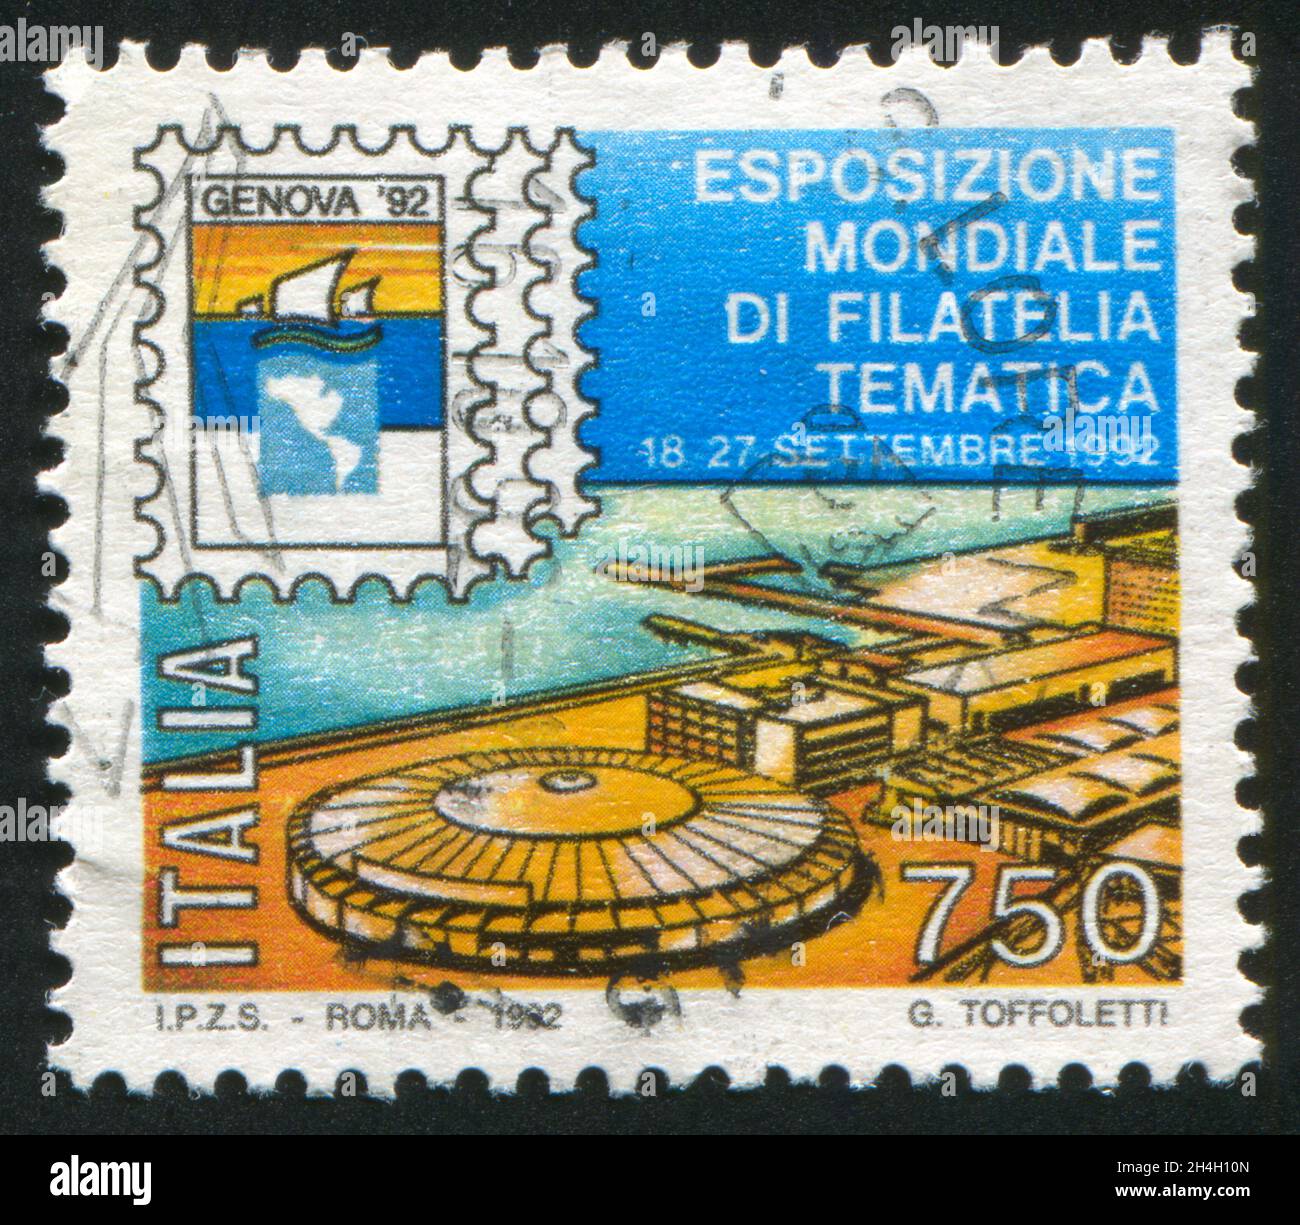 ITALIA - CIRCA 1992: Francobollo stampato dall'Italia, mostra la mostra filatelica internazionale a Genova, circa 1992 Foto Stock